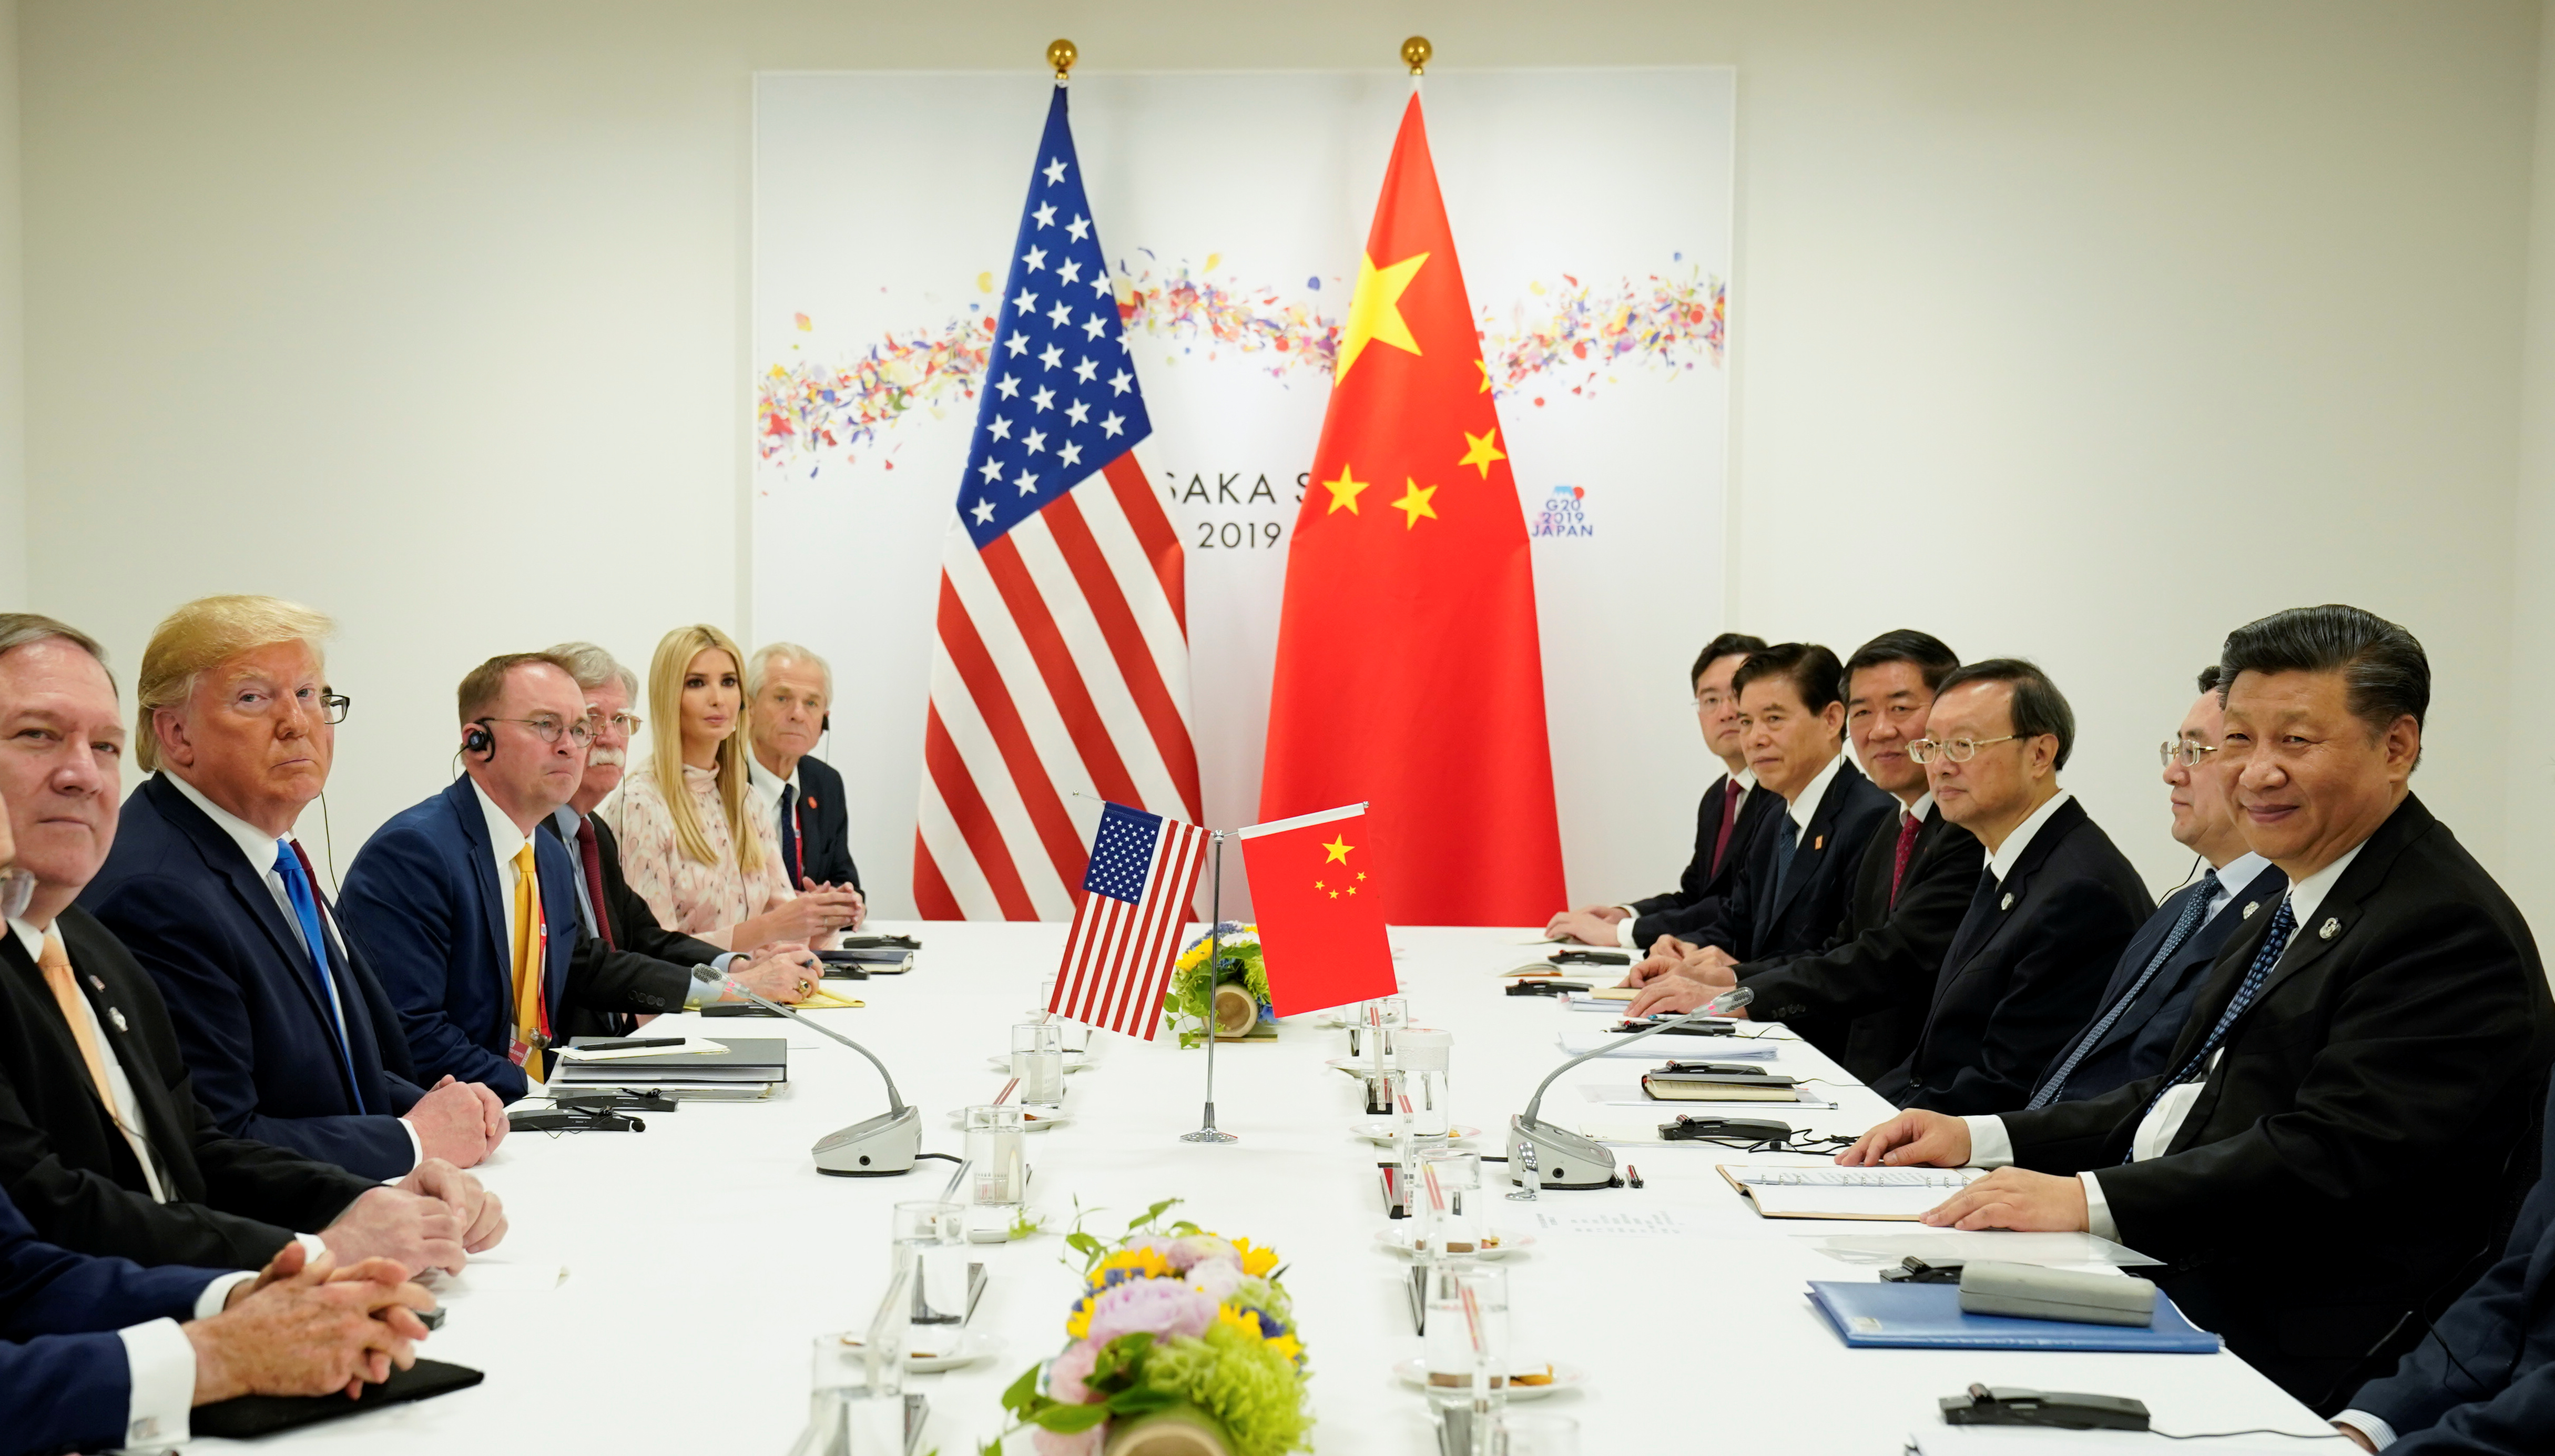 Với các tình huống thay đổi trong quan hệ giữa Mỹ và Trung Quốc, cạnh tranh chiến lược ngày càng gay gắt hơn. Khám phá ảnh có liên quan và học truyền thống và ảnh hưởng của những cái tranh về thương mại, tài nguyên, và sức mạnh trong quan hệ giữa hai quốc gia hàng đầu thế giới.